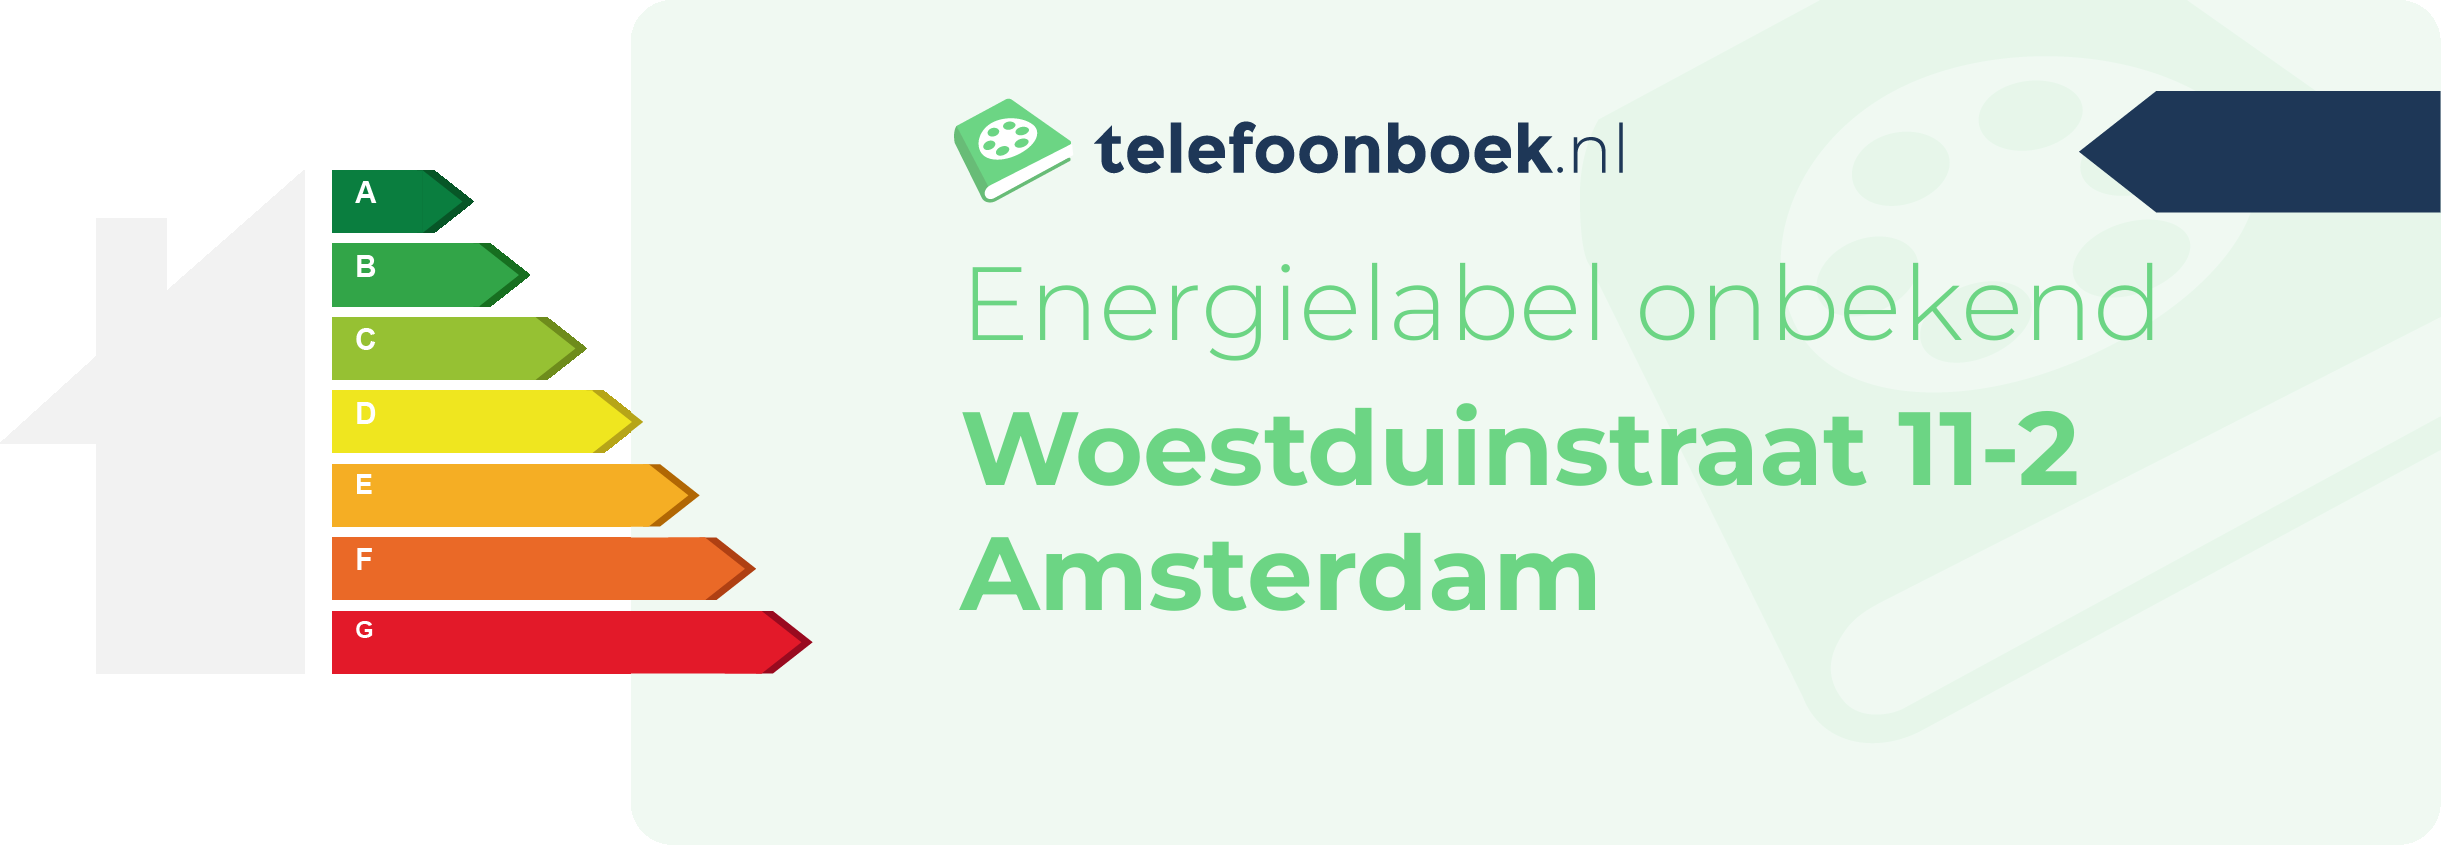 Energielabel Woestduinstraat 11-2 Amsterdam